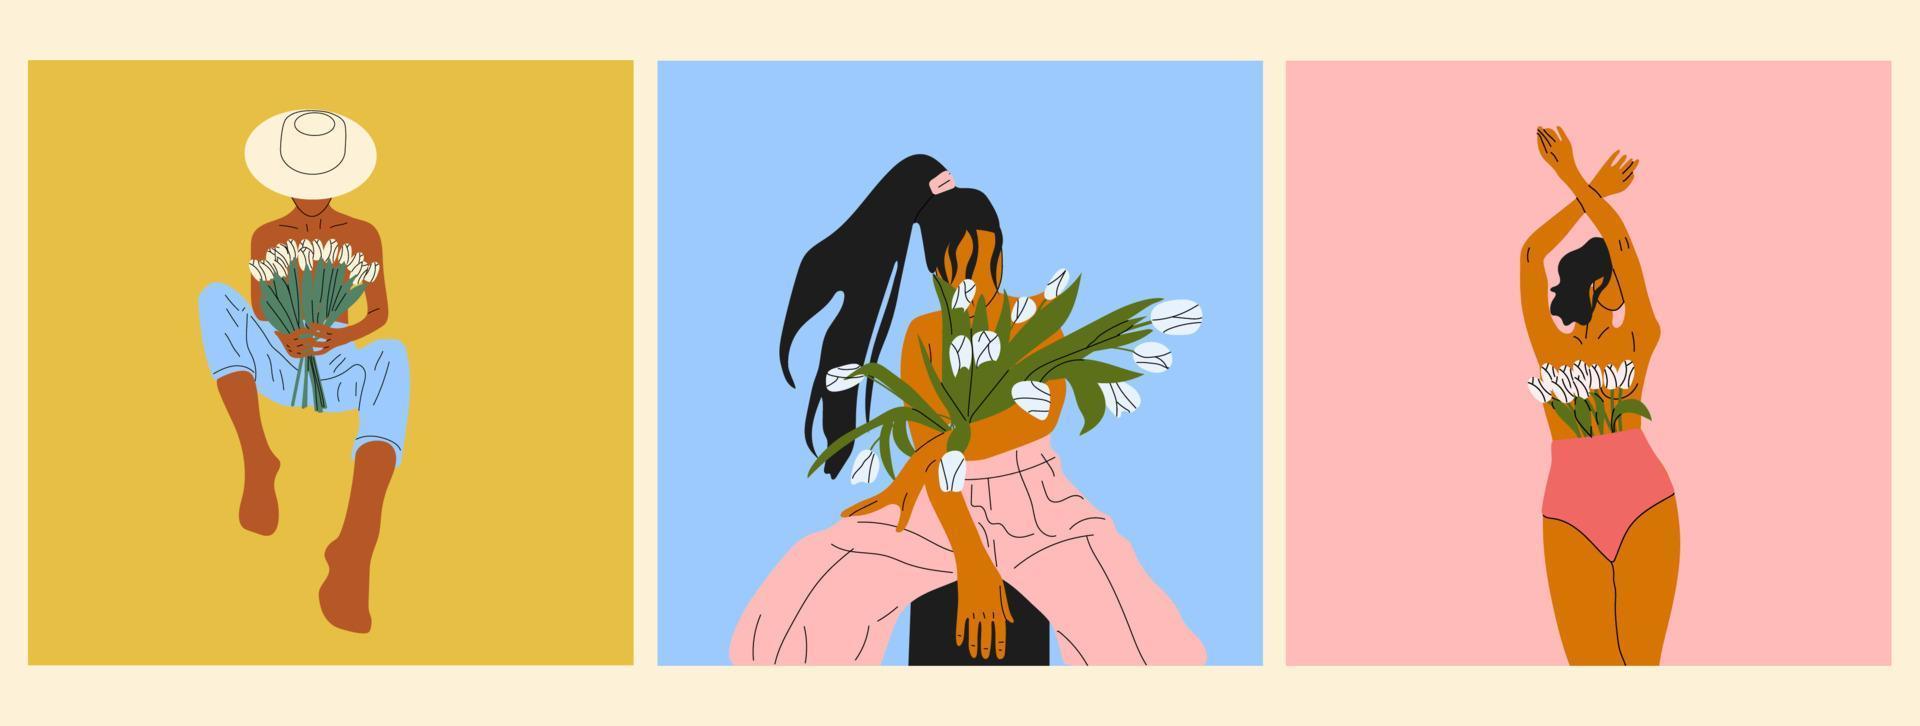 ensemble de trois femelles fleurissant à l'intérieur de l'illustration vectorielle plane. femmes nues avec des fleurs poussant de la poitrine. concept de féminité, de féminisme, de prospérité et d'amour de soi. vecteur